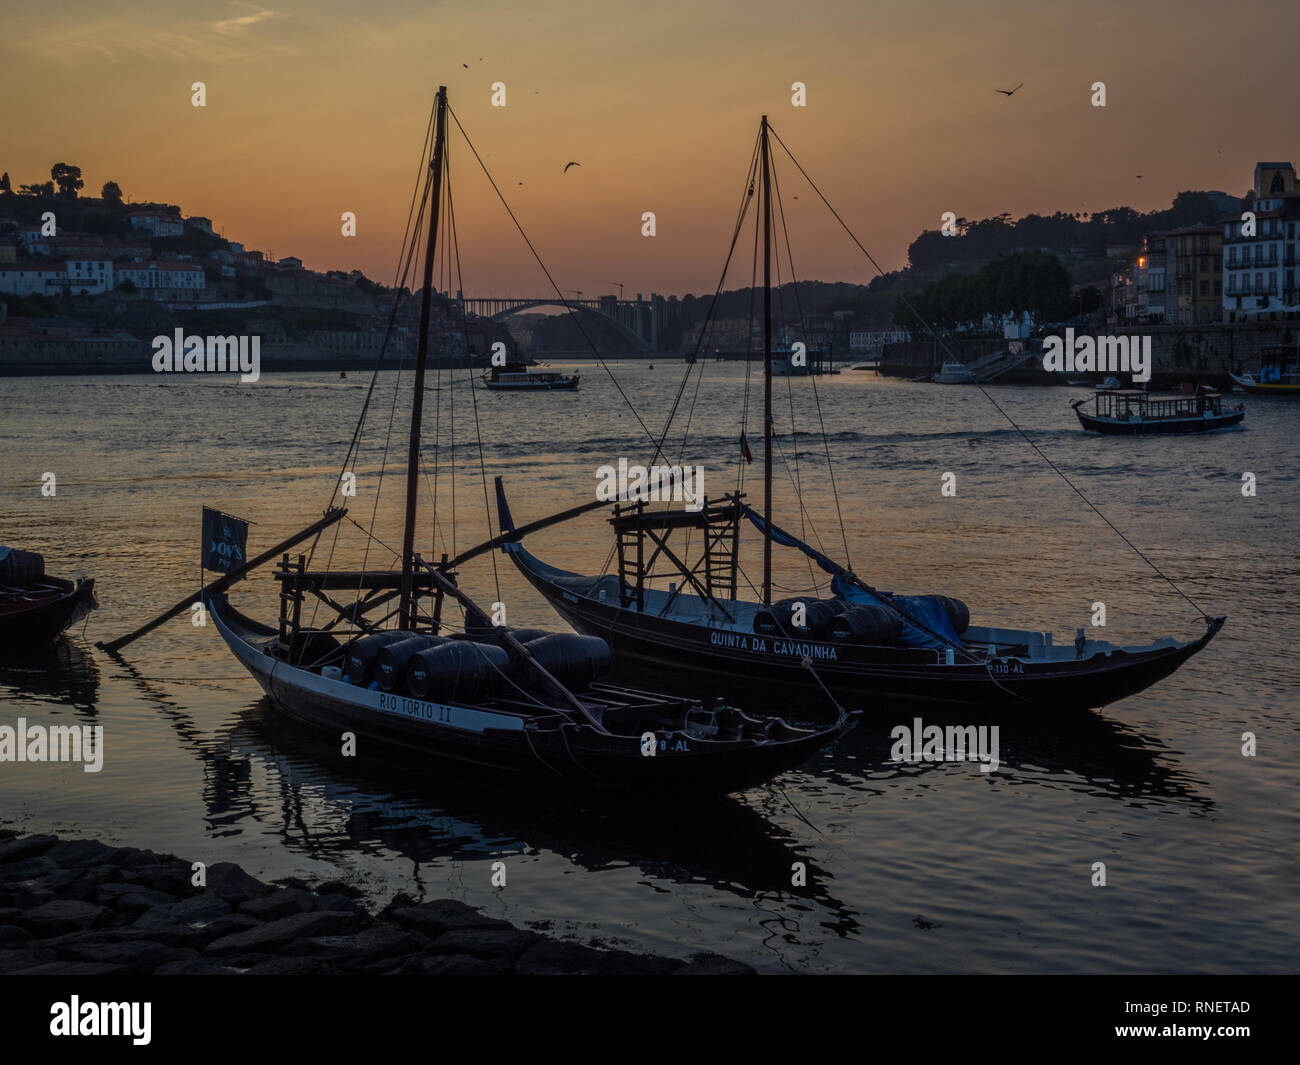 Un tramonto sul fiume Douro a bassa marea in Porto con una coppia di due 2 yacht Quinta da Cavadinha e rio Torto II in silhouette e un uccello in volo Foto Stock